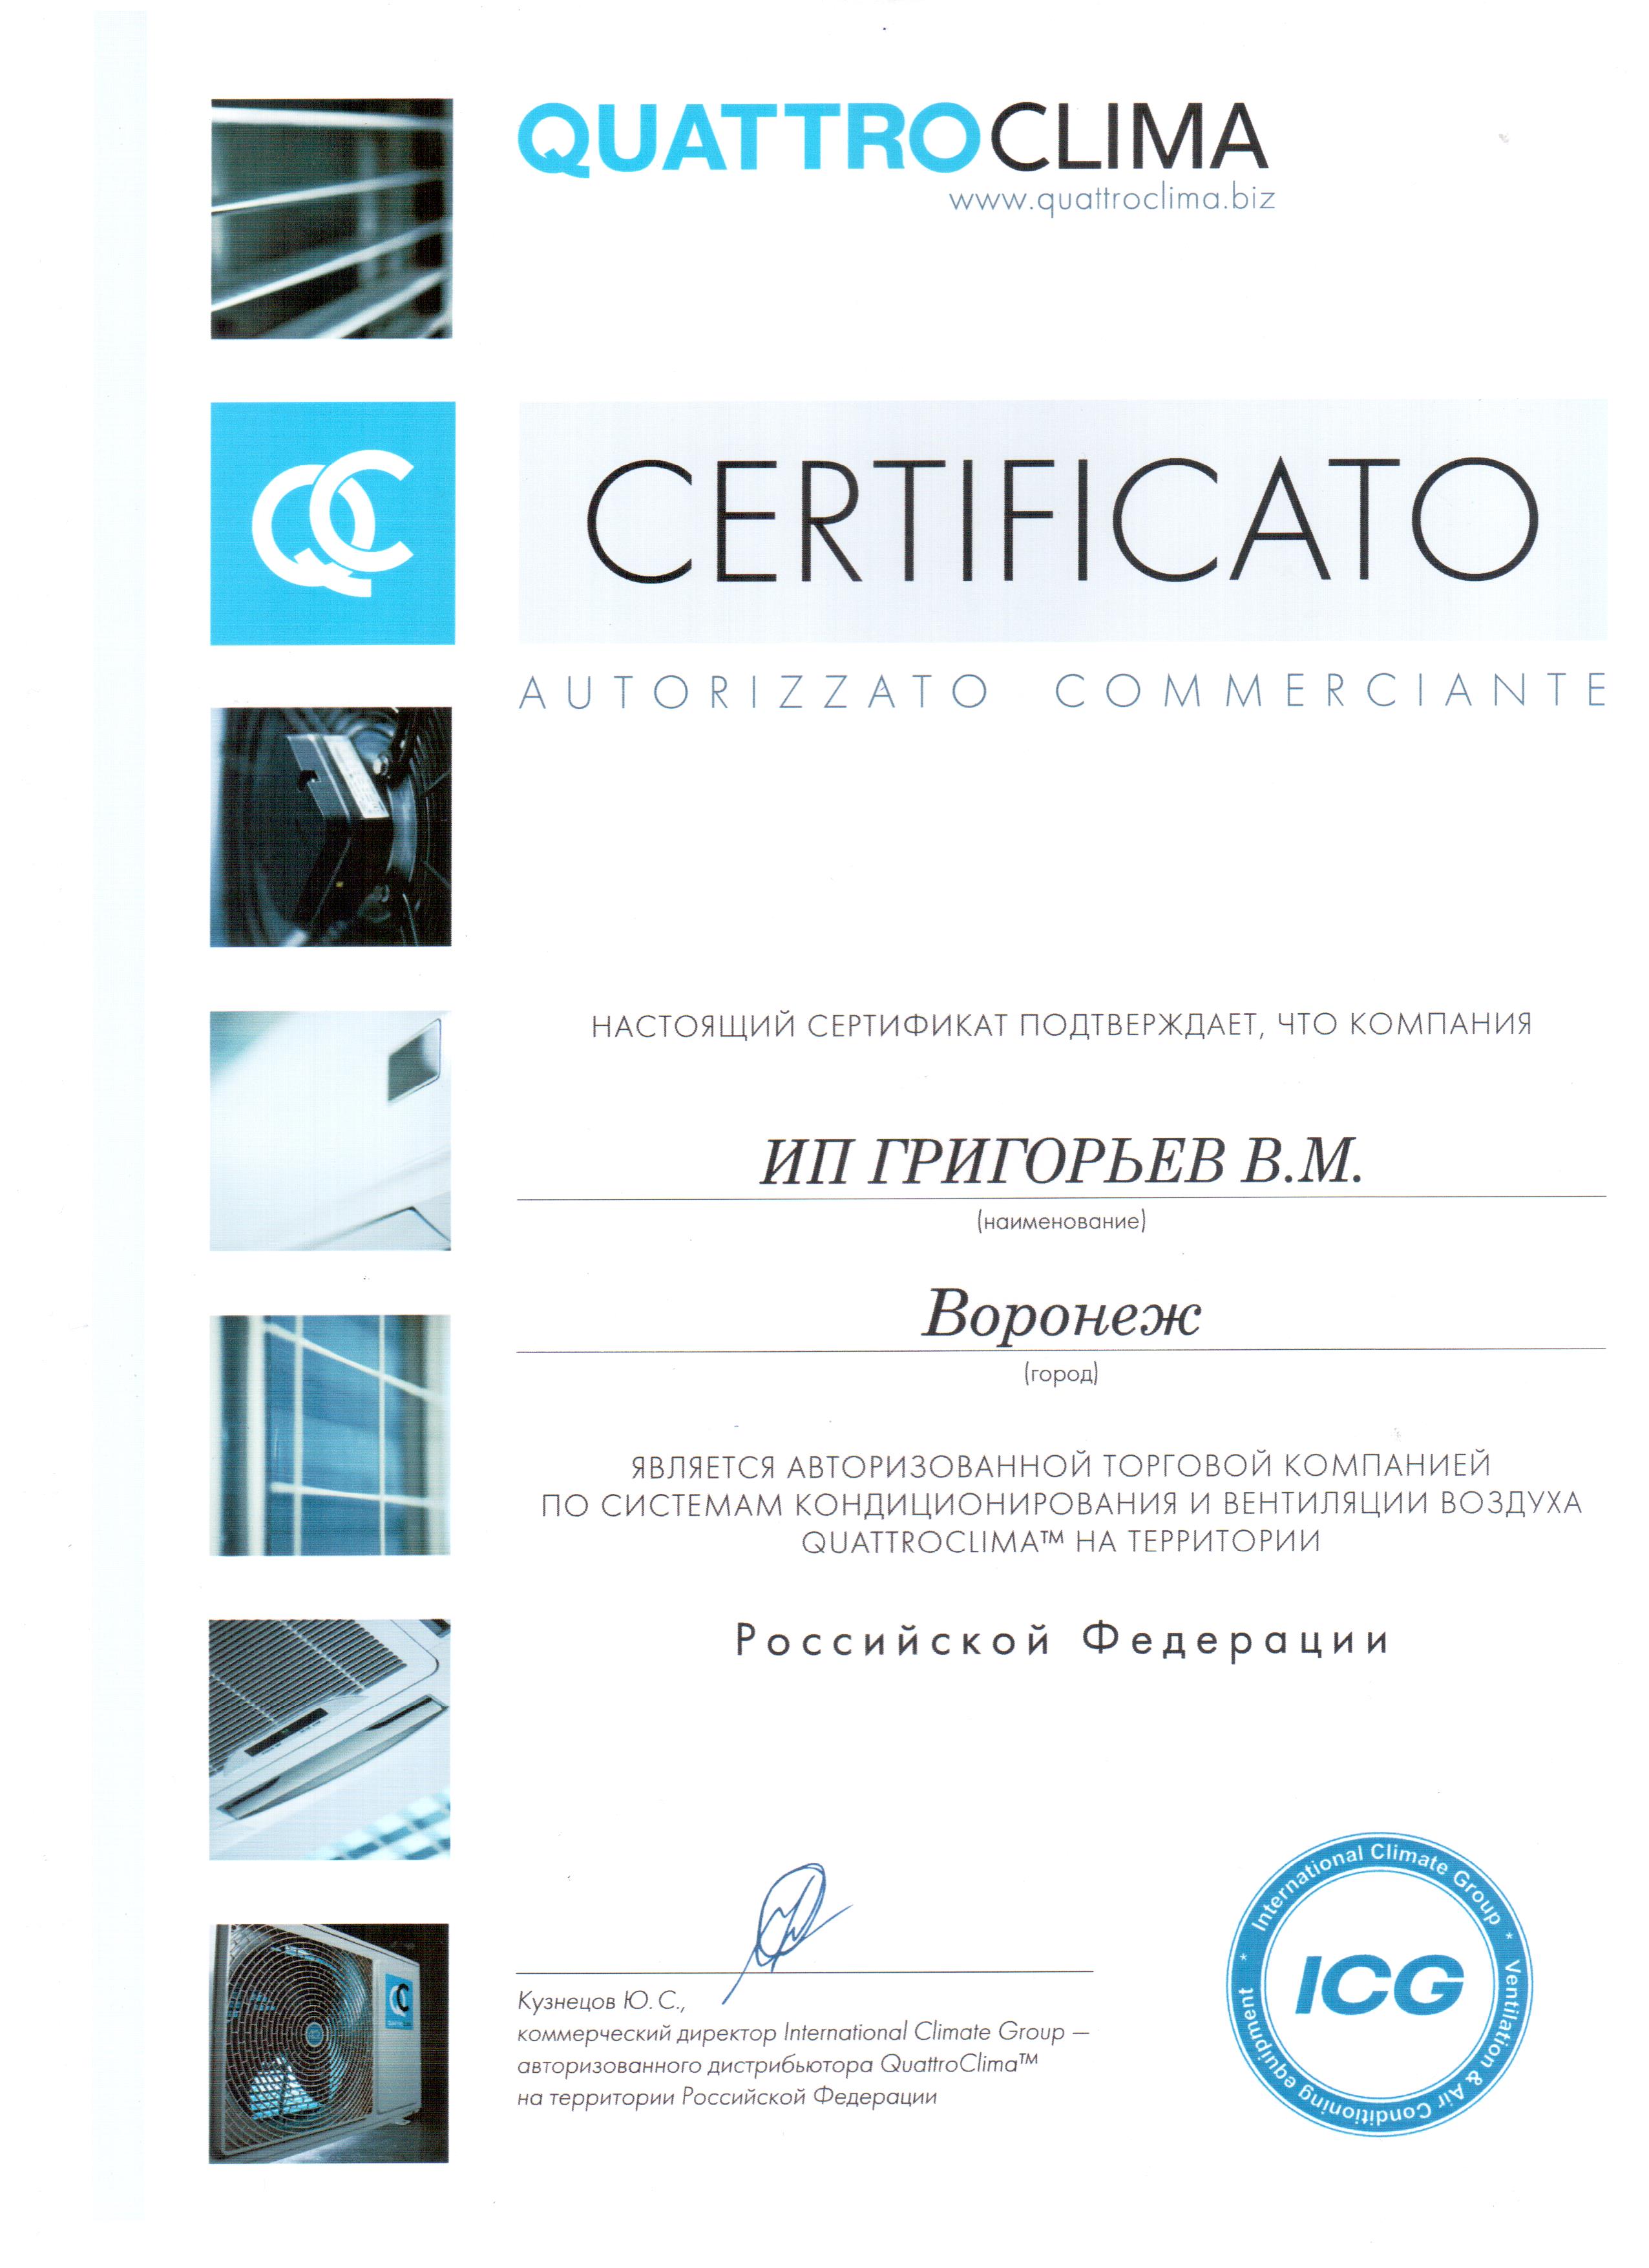 Нажмите на изображение, чтобы посмотреть сертификат Quattroclima